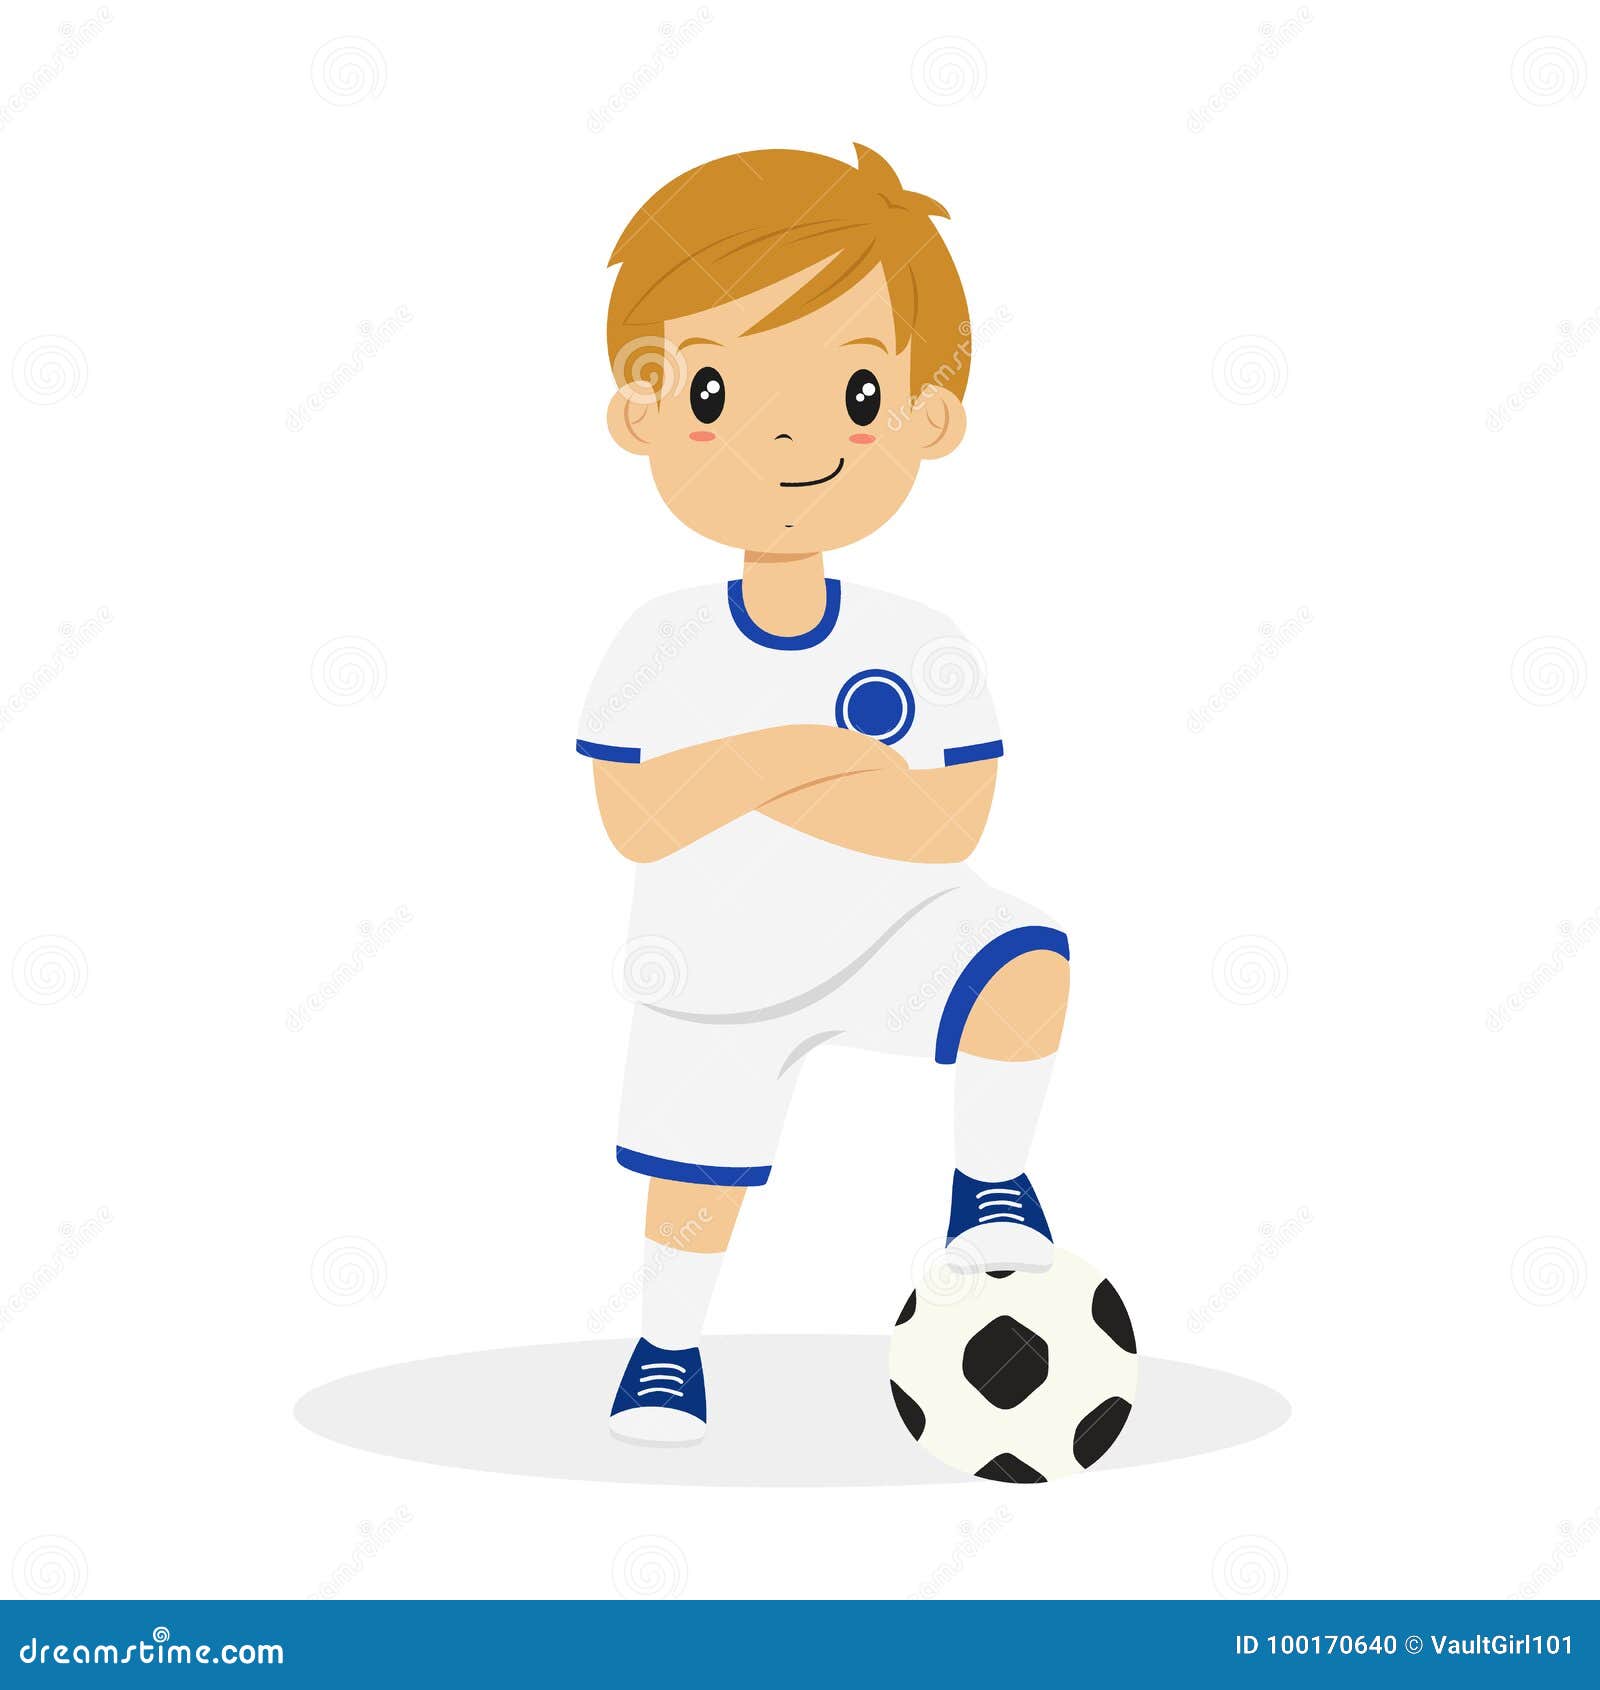 Menino jogando futebol bola ilustração, jogador de futebol ilustração,  menino bonito, criança, fotografia, esporte png